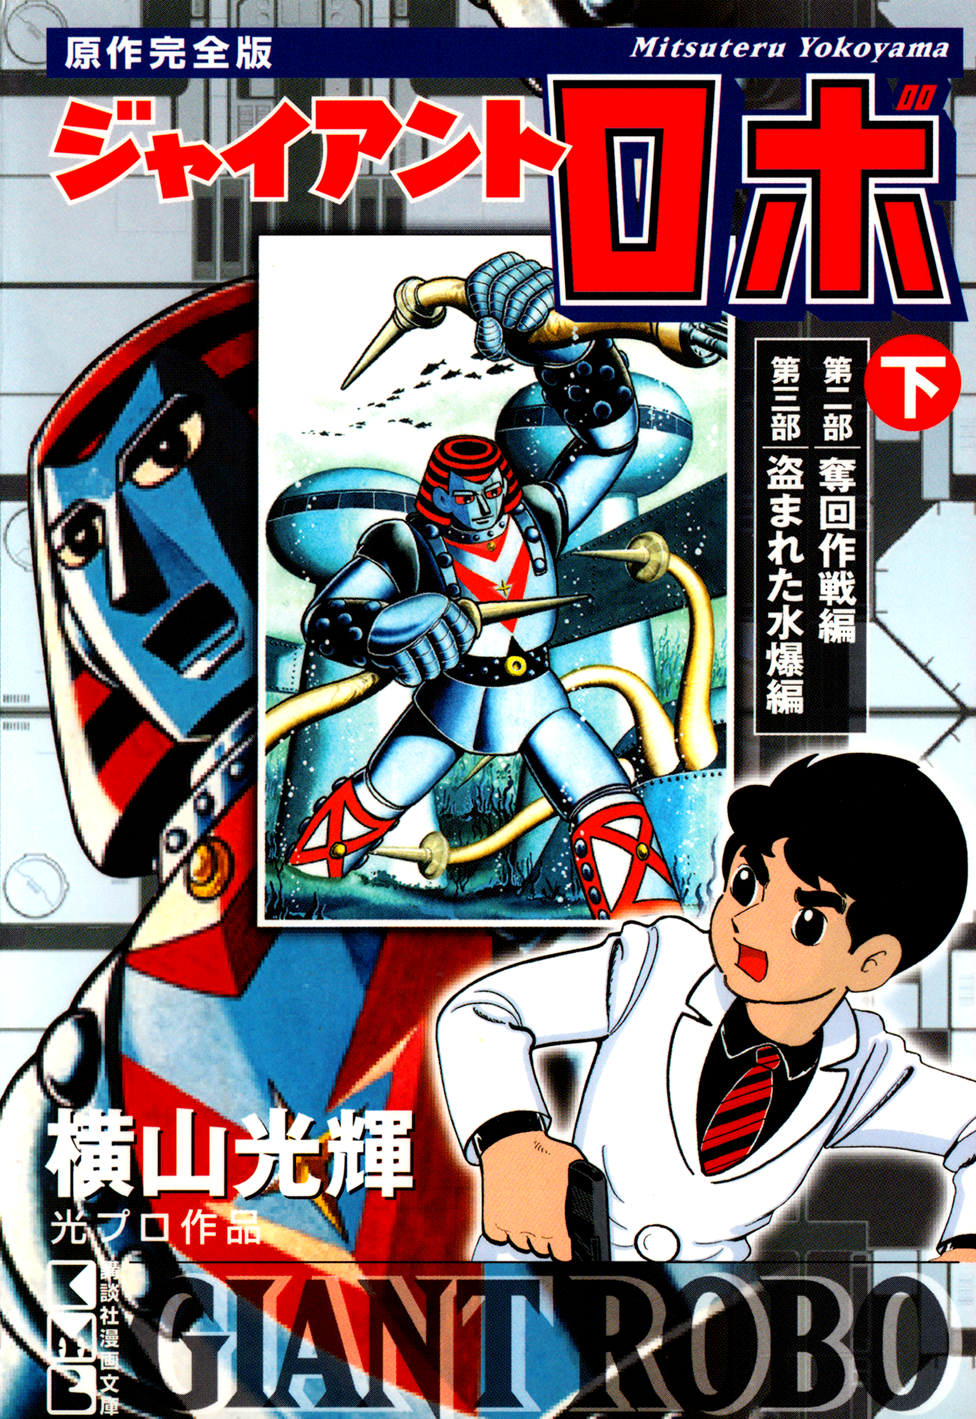 Giant robo manga